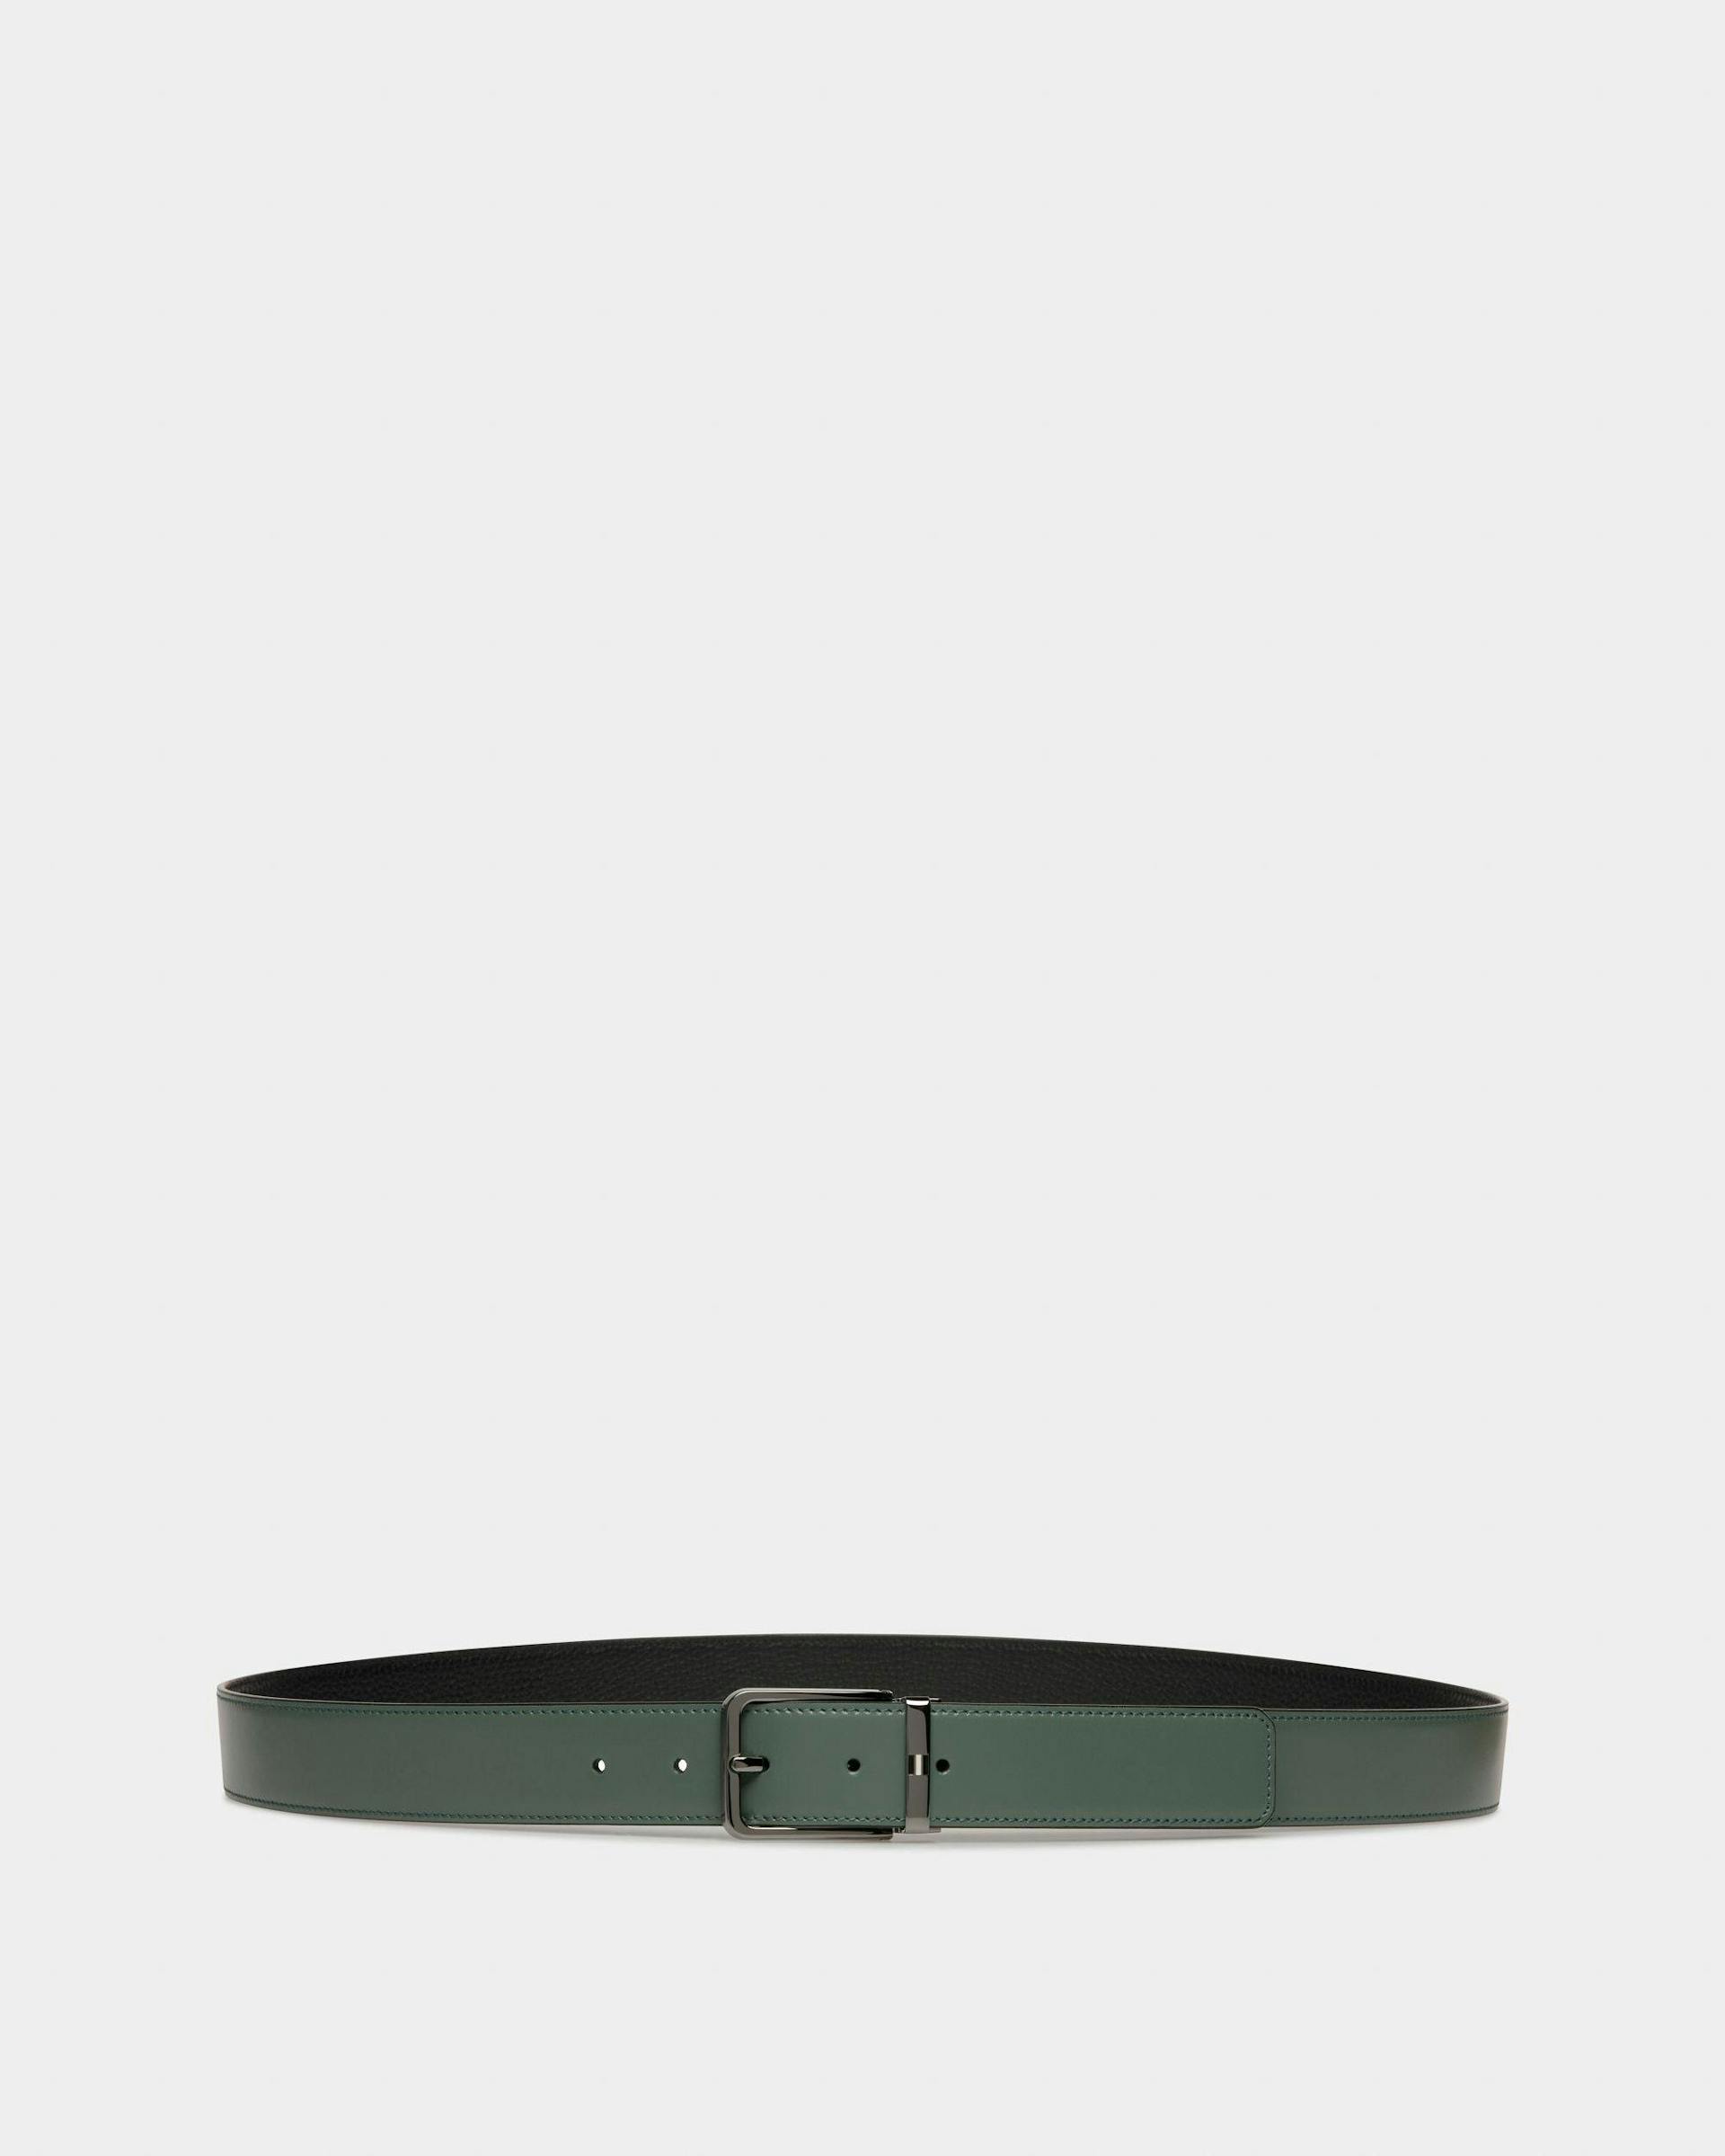 Arkin Leather 35mm Belt In Black & Green - Men's - Bally - 01